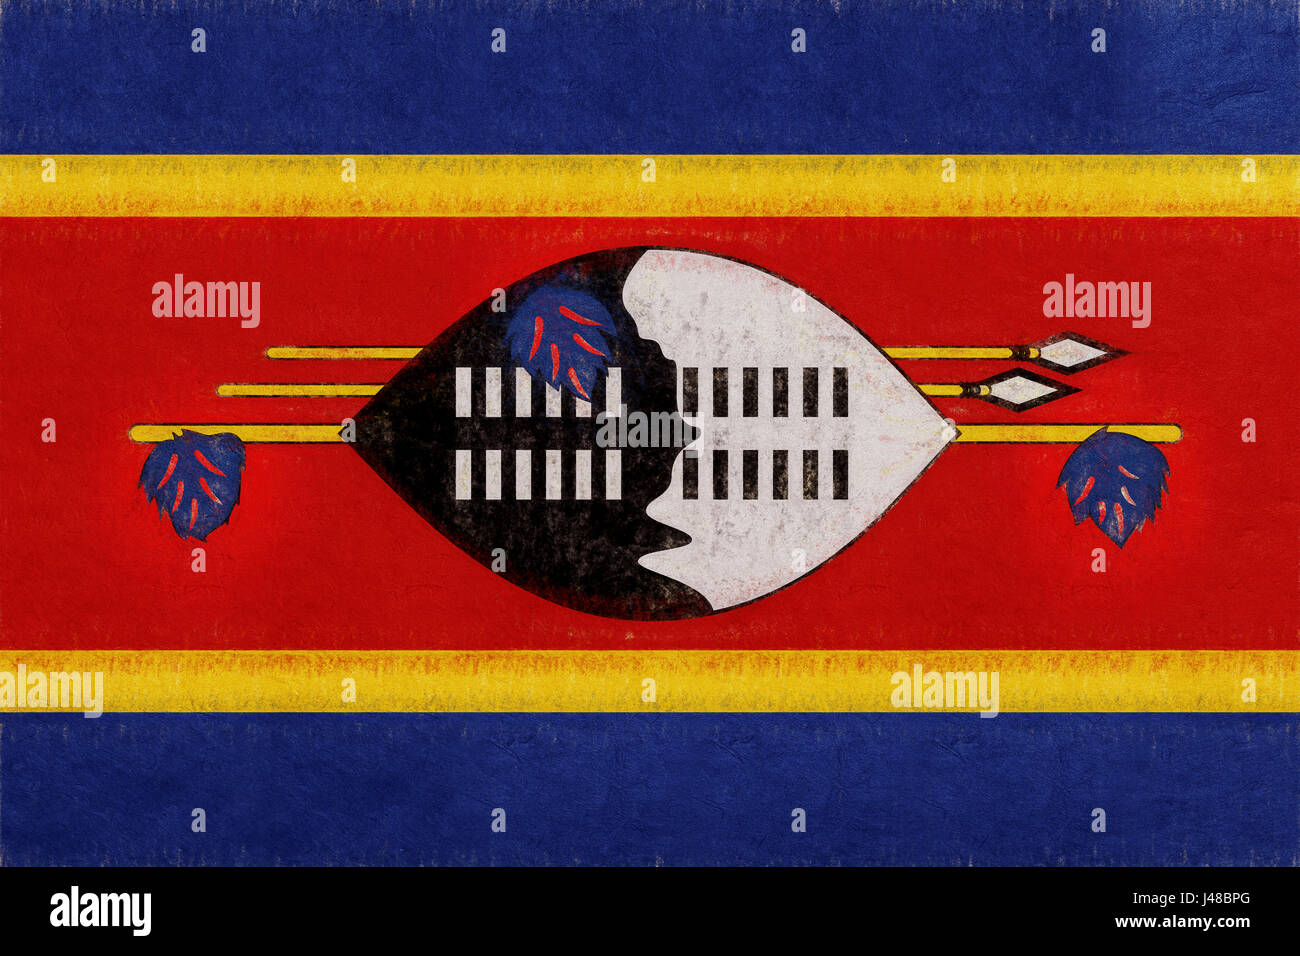 Illustration du drapeau national du Swaziland avec un look grunge. Banque D'Images